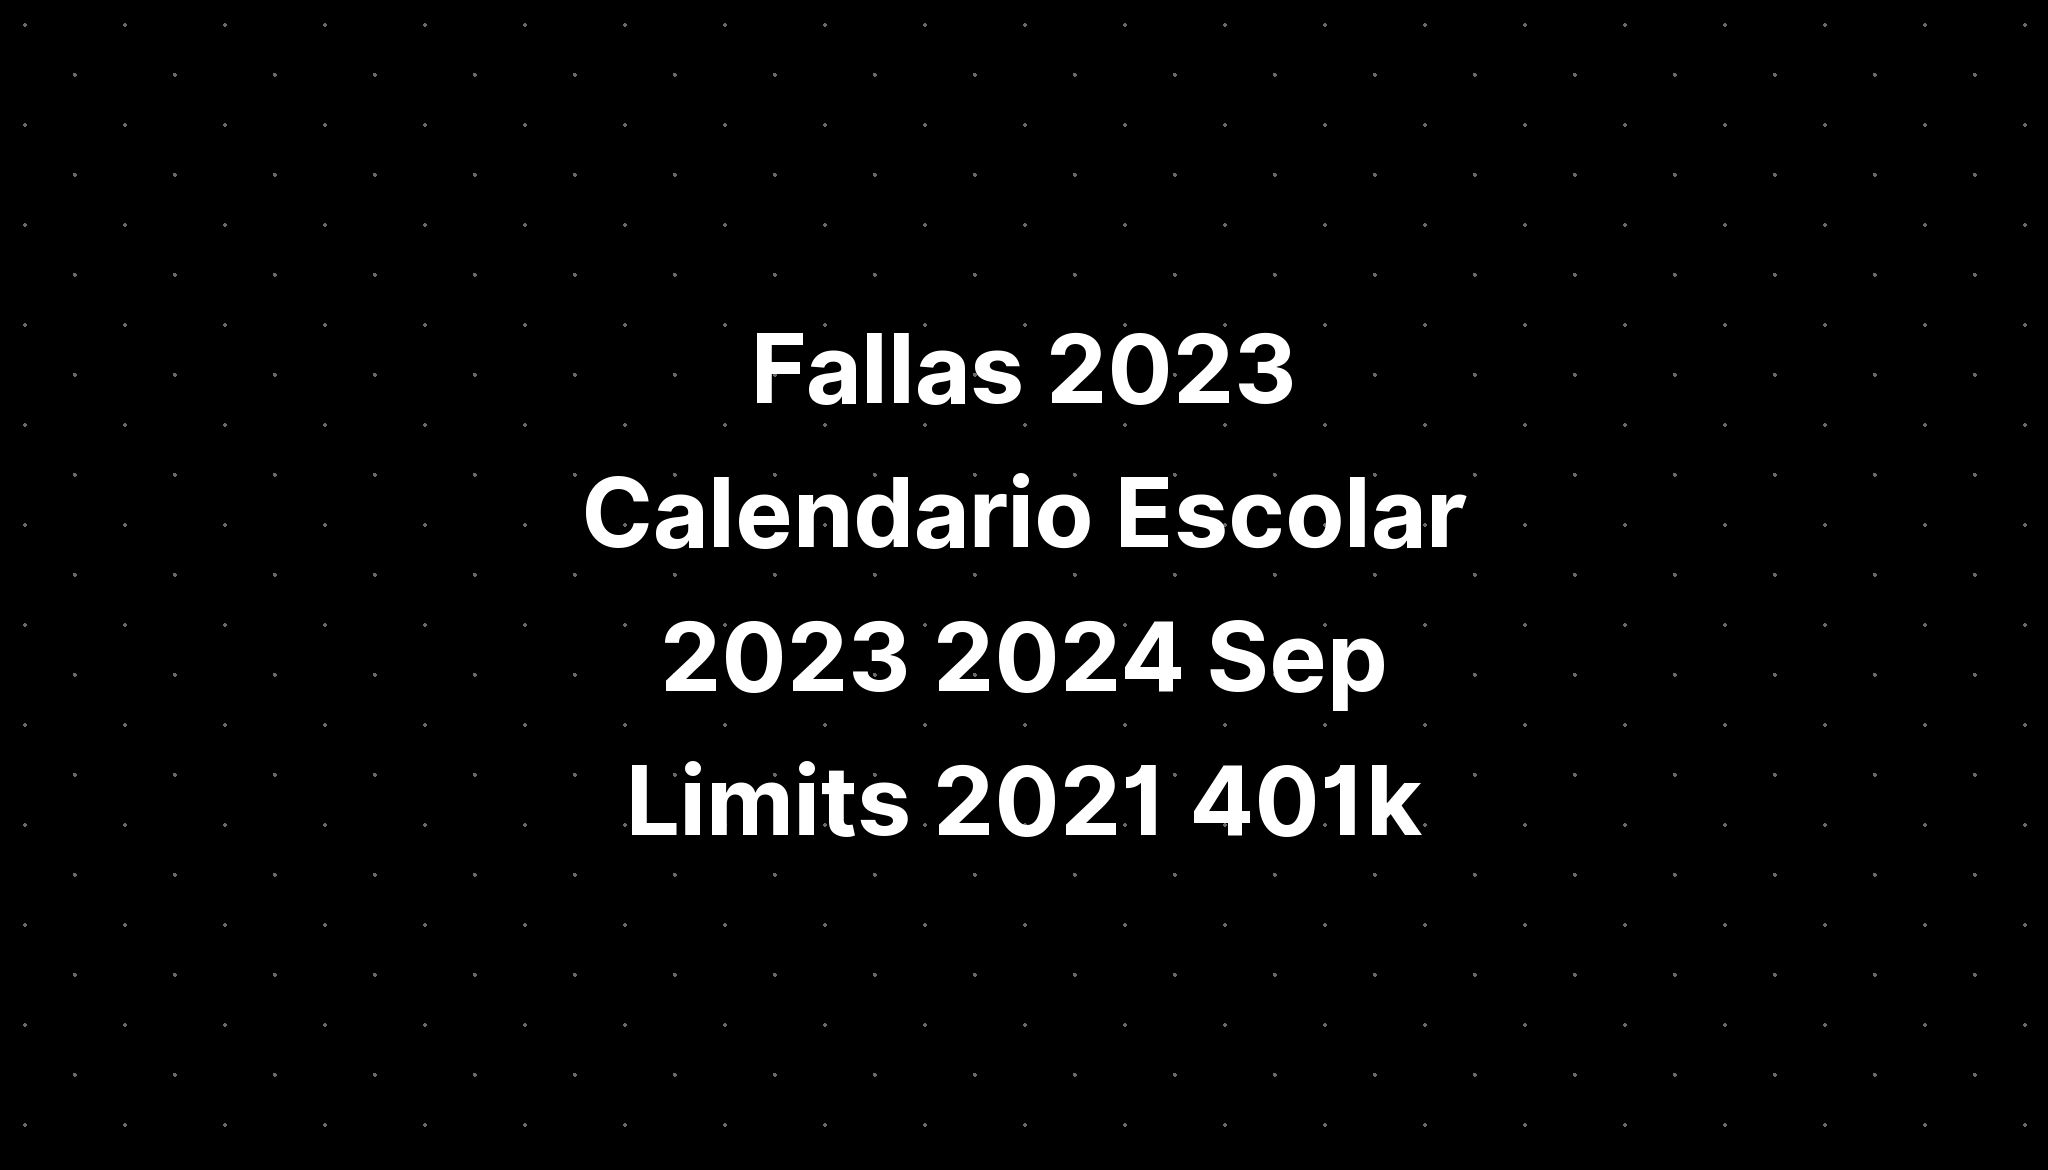 Fallas 2023 Calendario Escolar 2023 2024 Sep Limits 2021 401k IMAGESEE